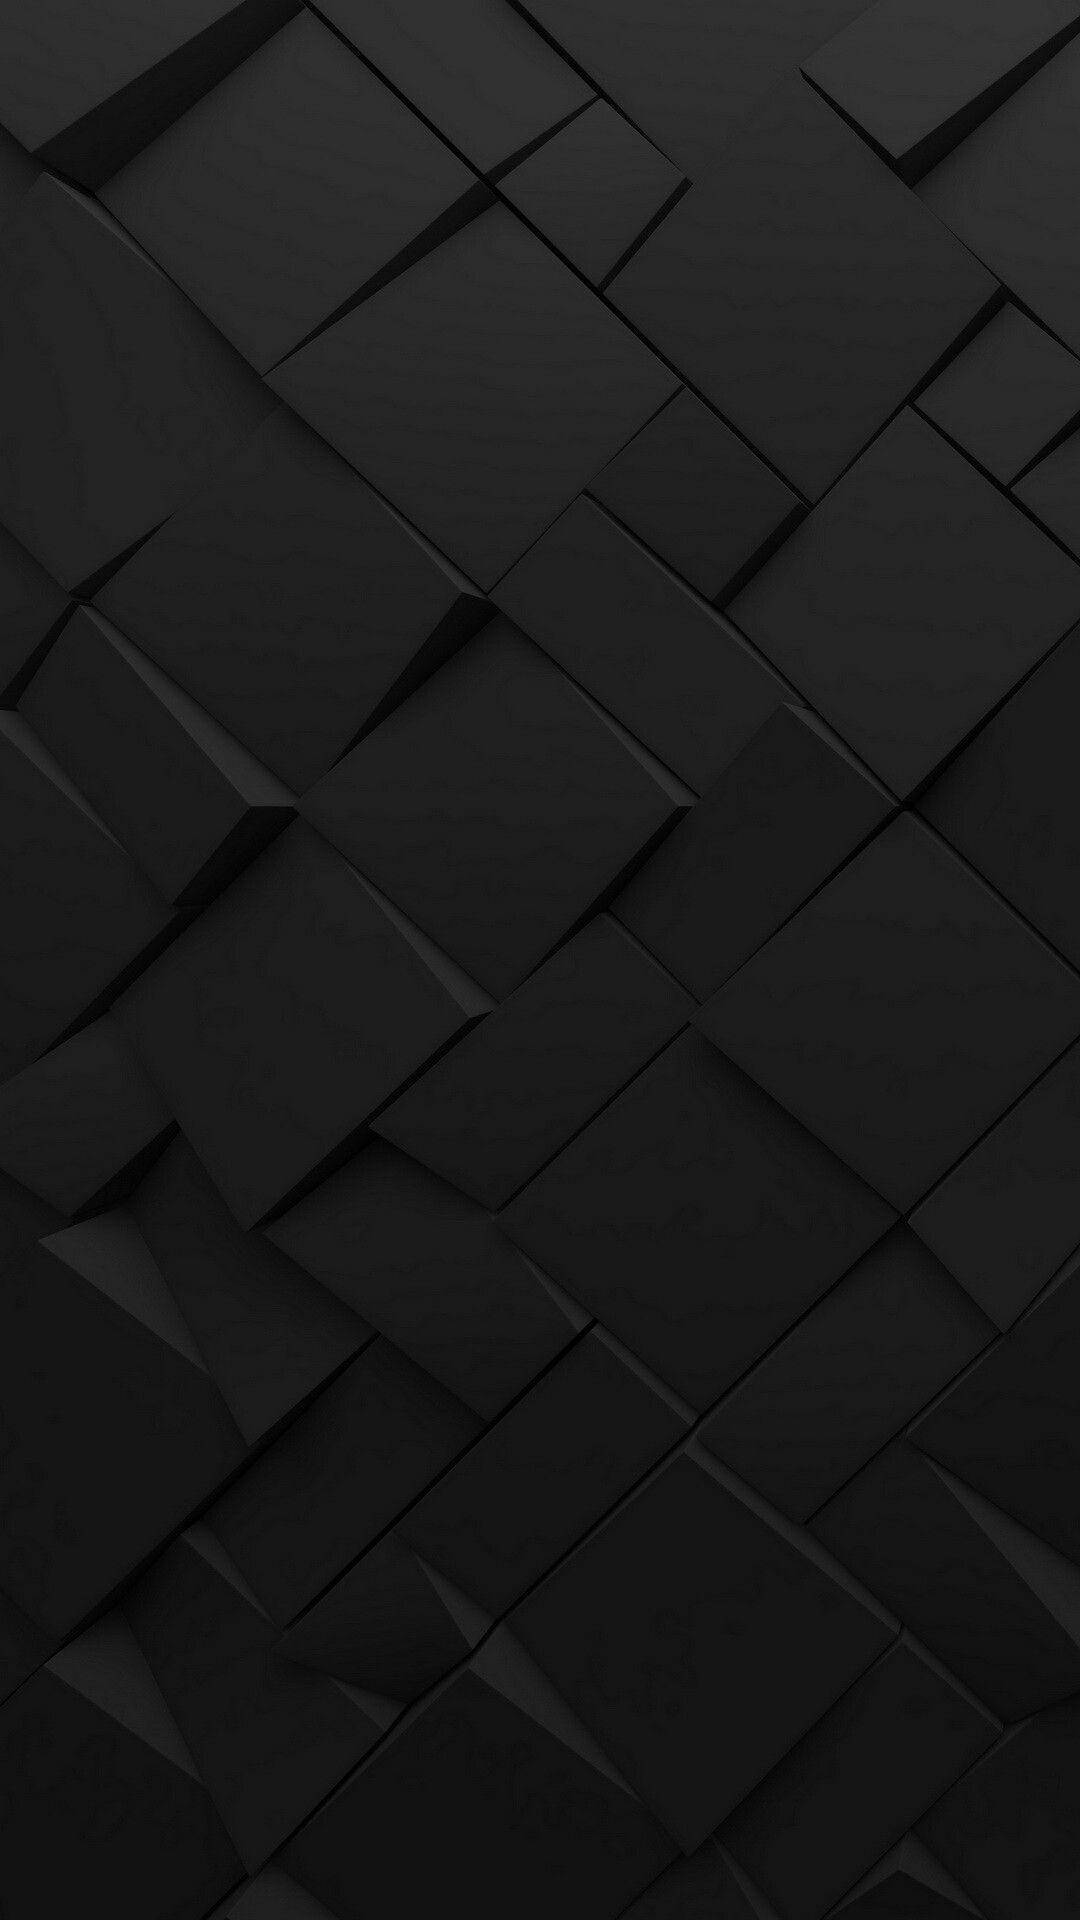 Dark Phone Uneven Cubes Background